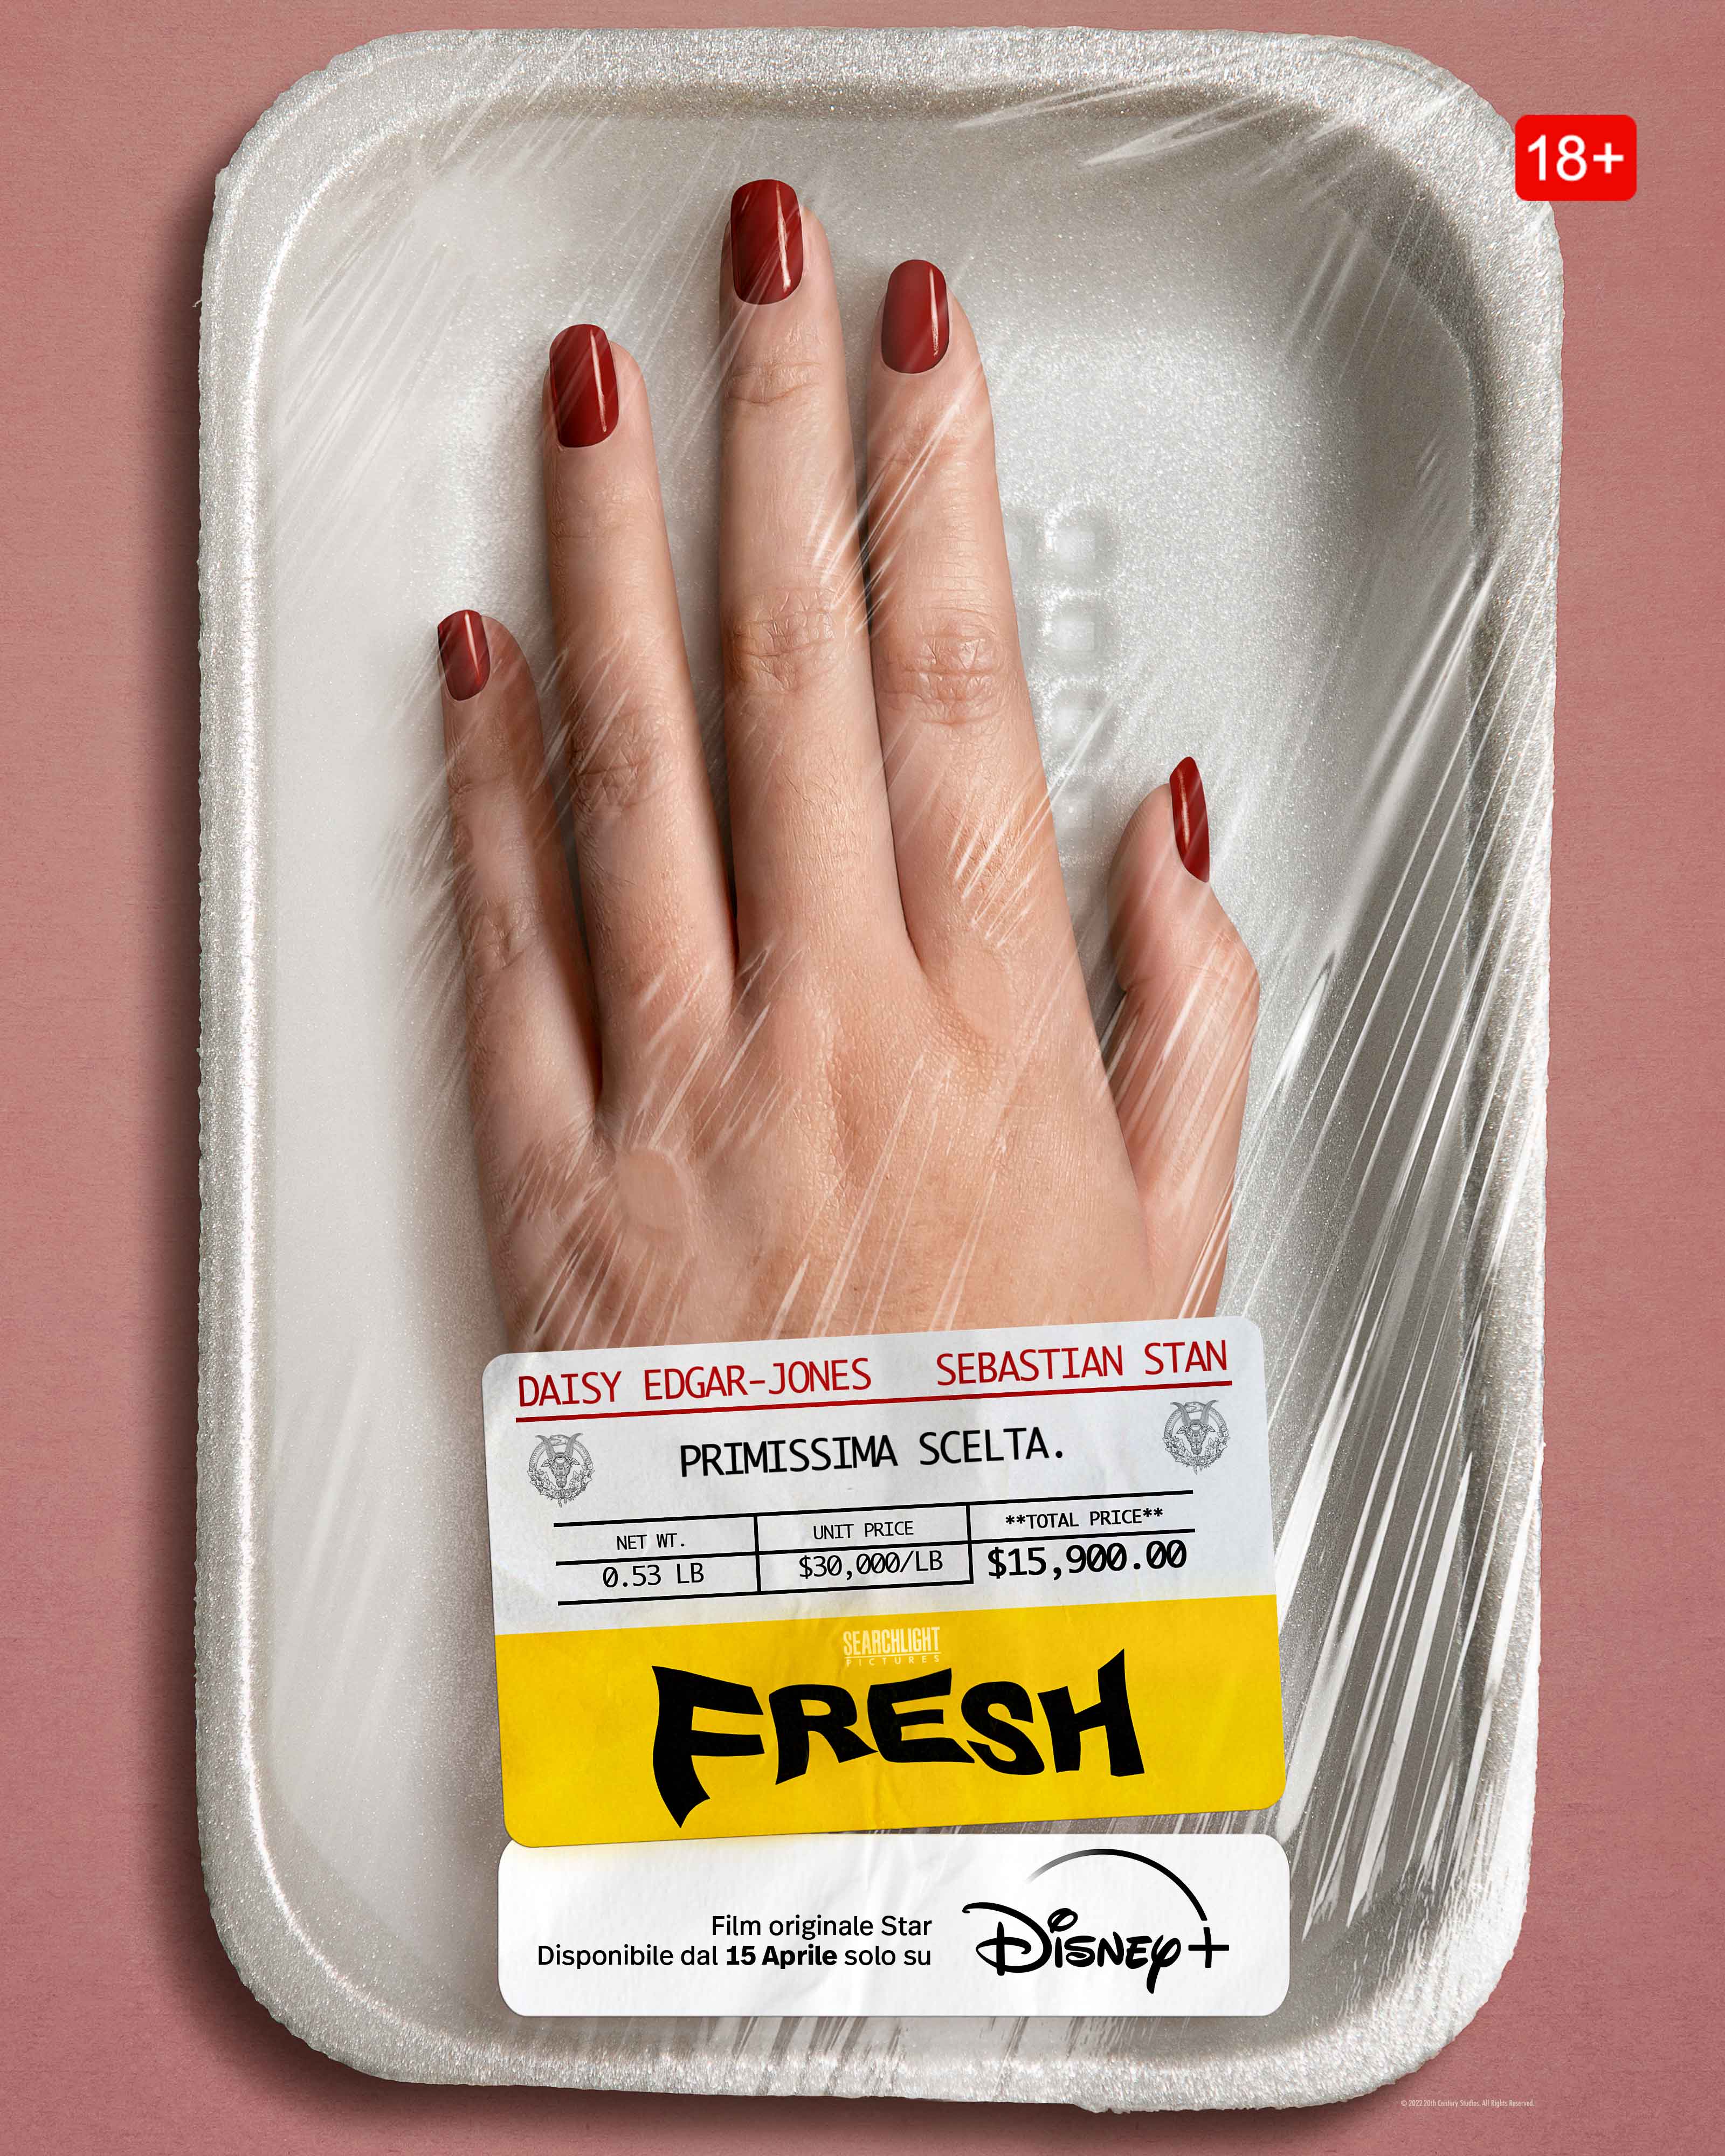 Fresh: l'inquietante poster del film con Daisy Edgar-Jones e Sebastian Stan